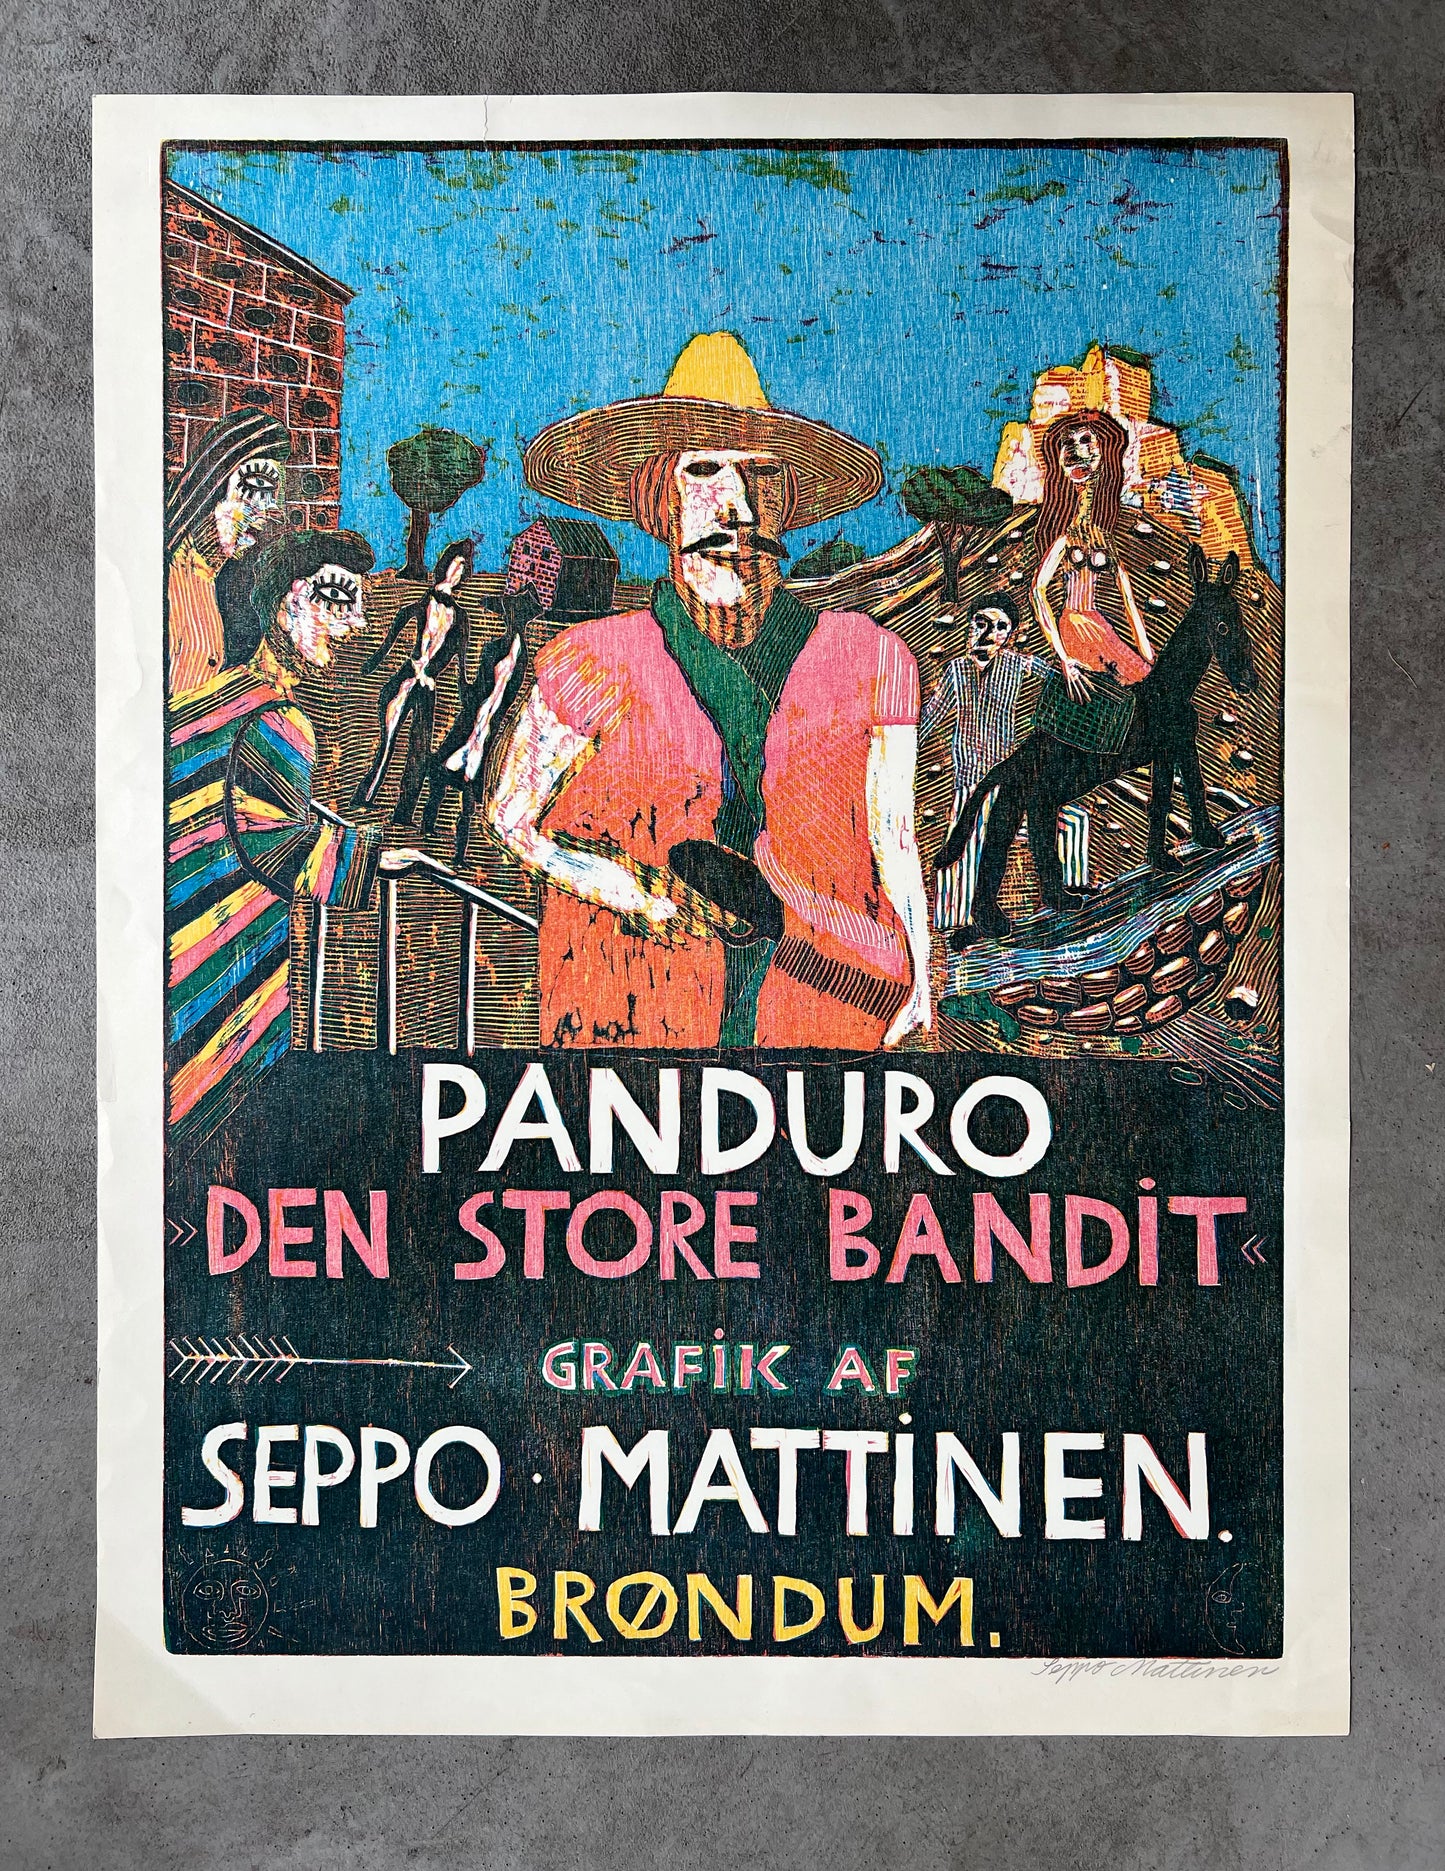 Seppo Mattinen. "Panduro the Great Bandit", 1973